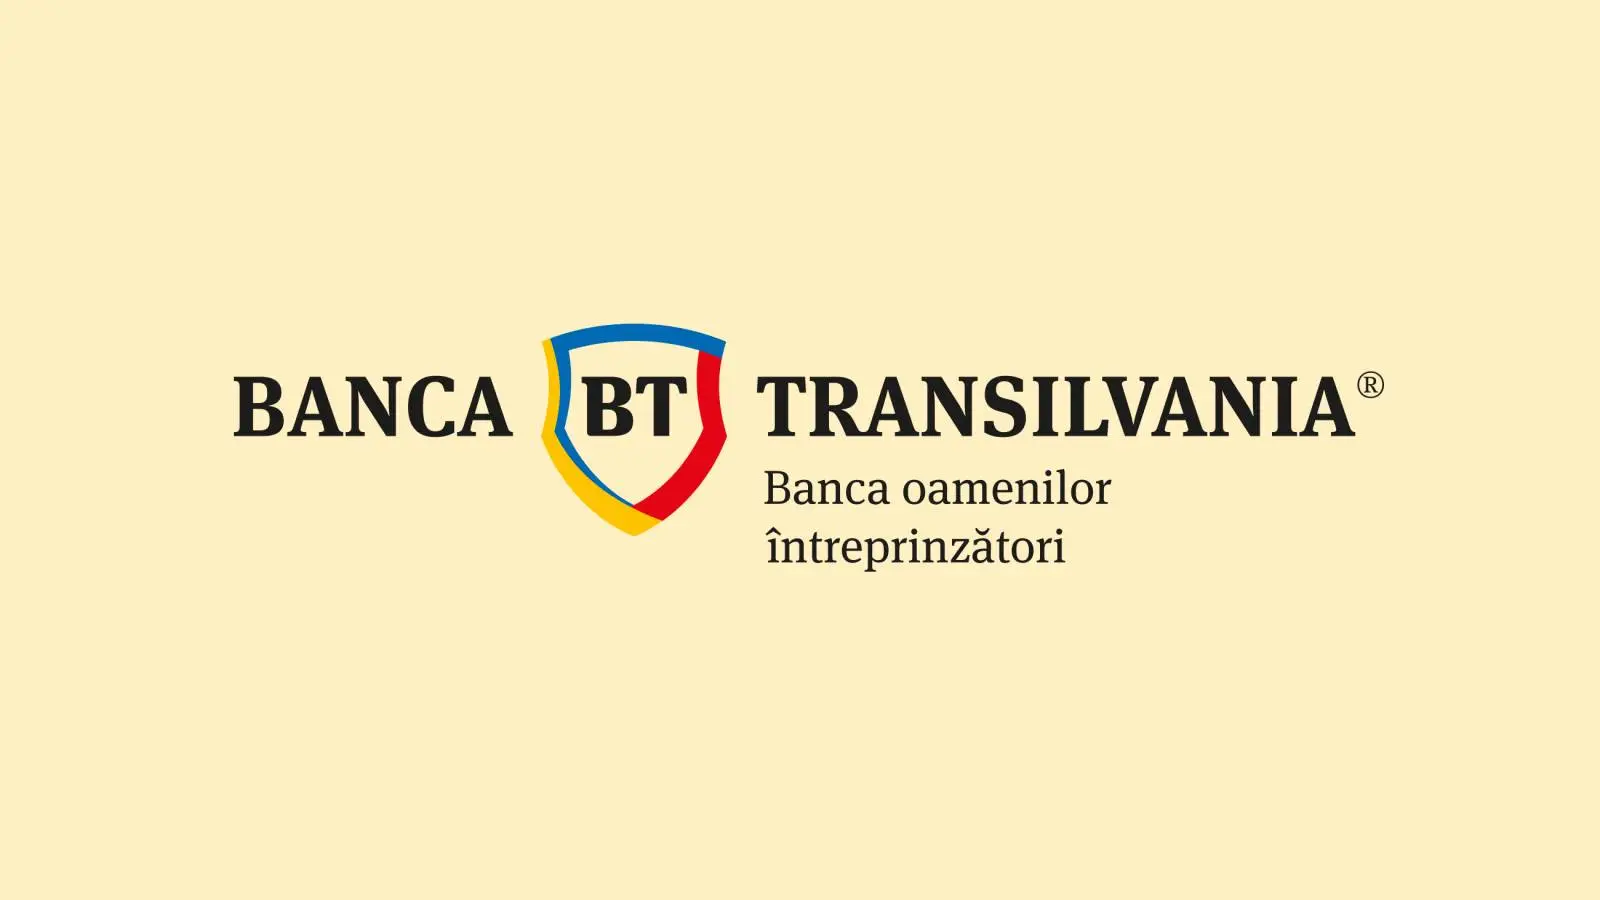 Viktigt meddelande om BANCA Transilvania GRATIS till rumänska kunder